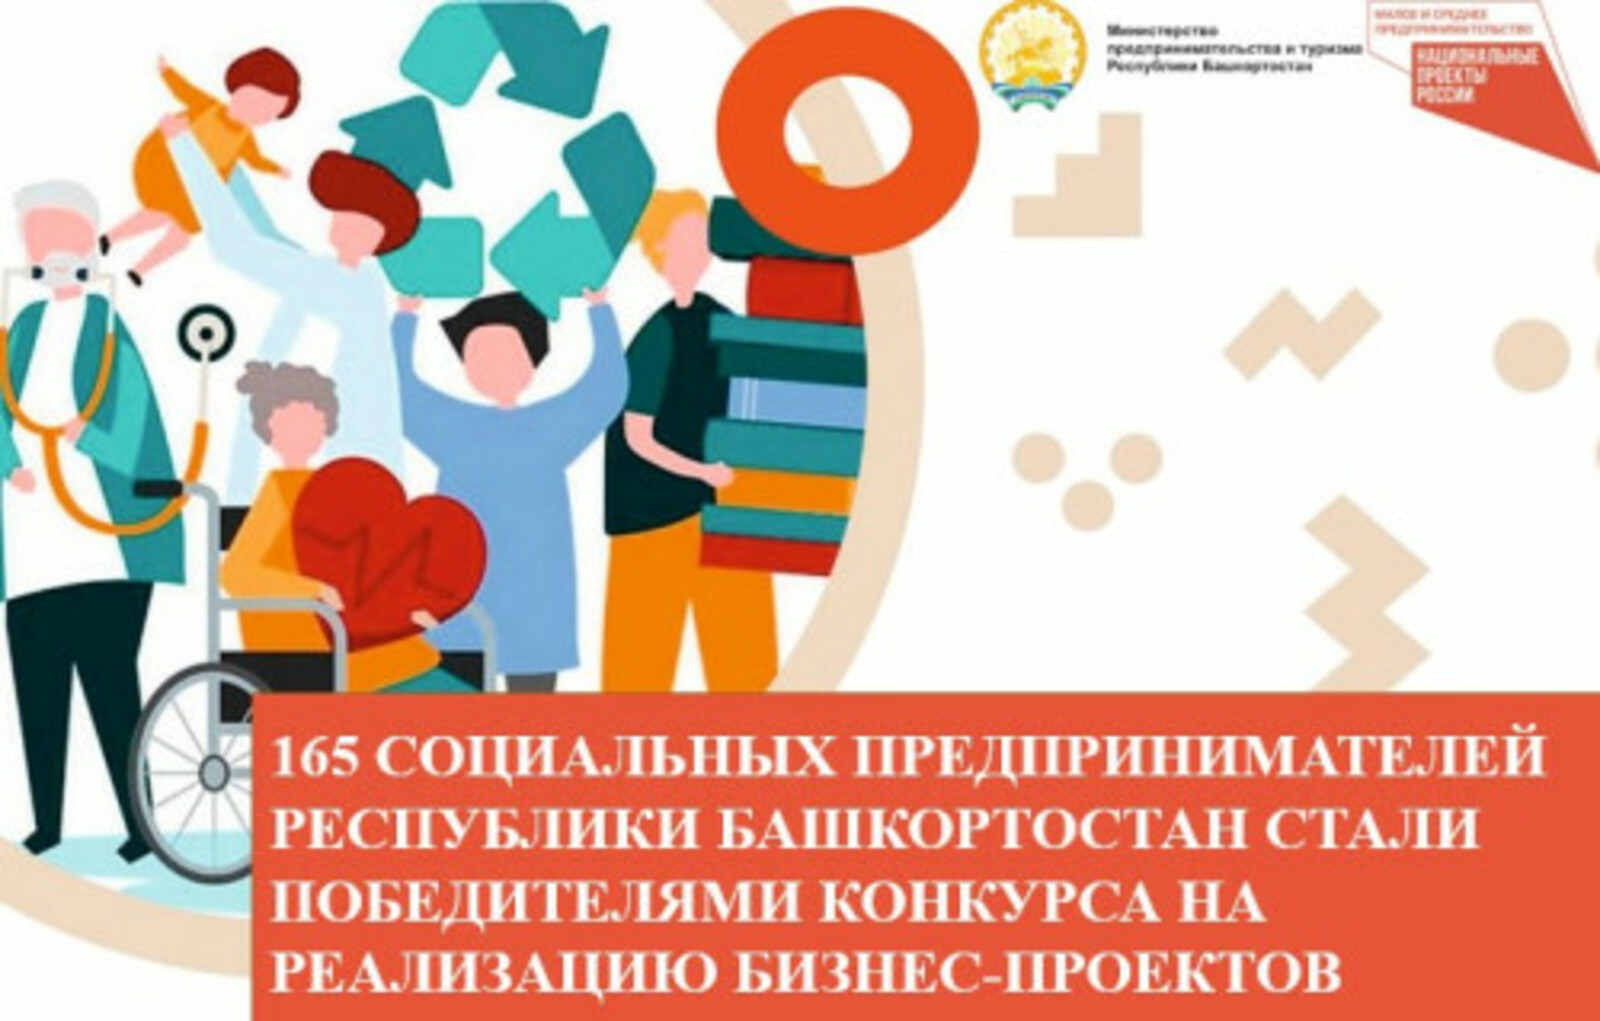 165 социальных предпринимателей Башкирии стали победителями конкурса на реализацию бизнес-проектов